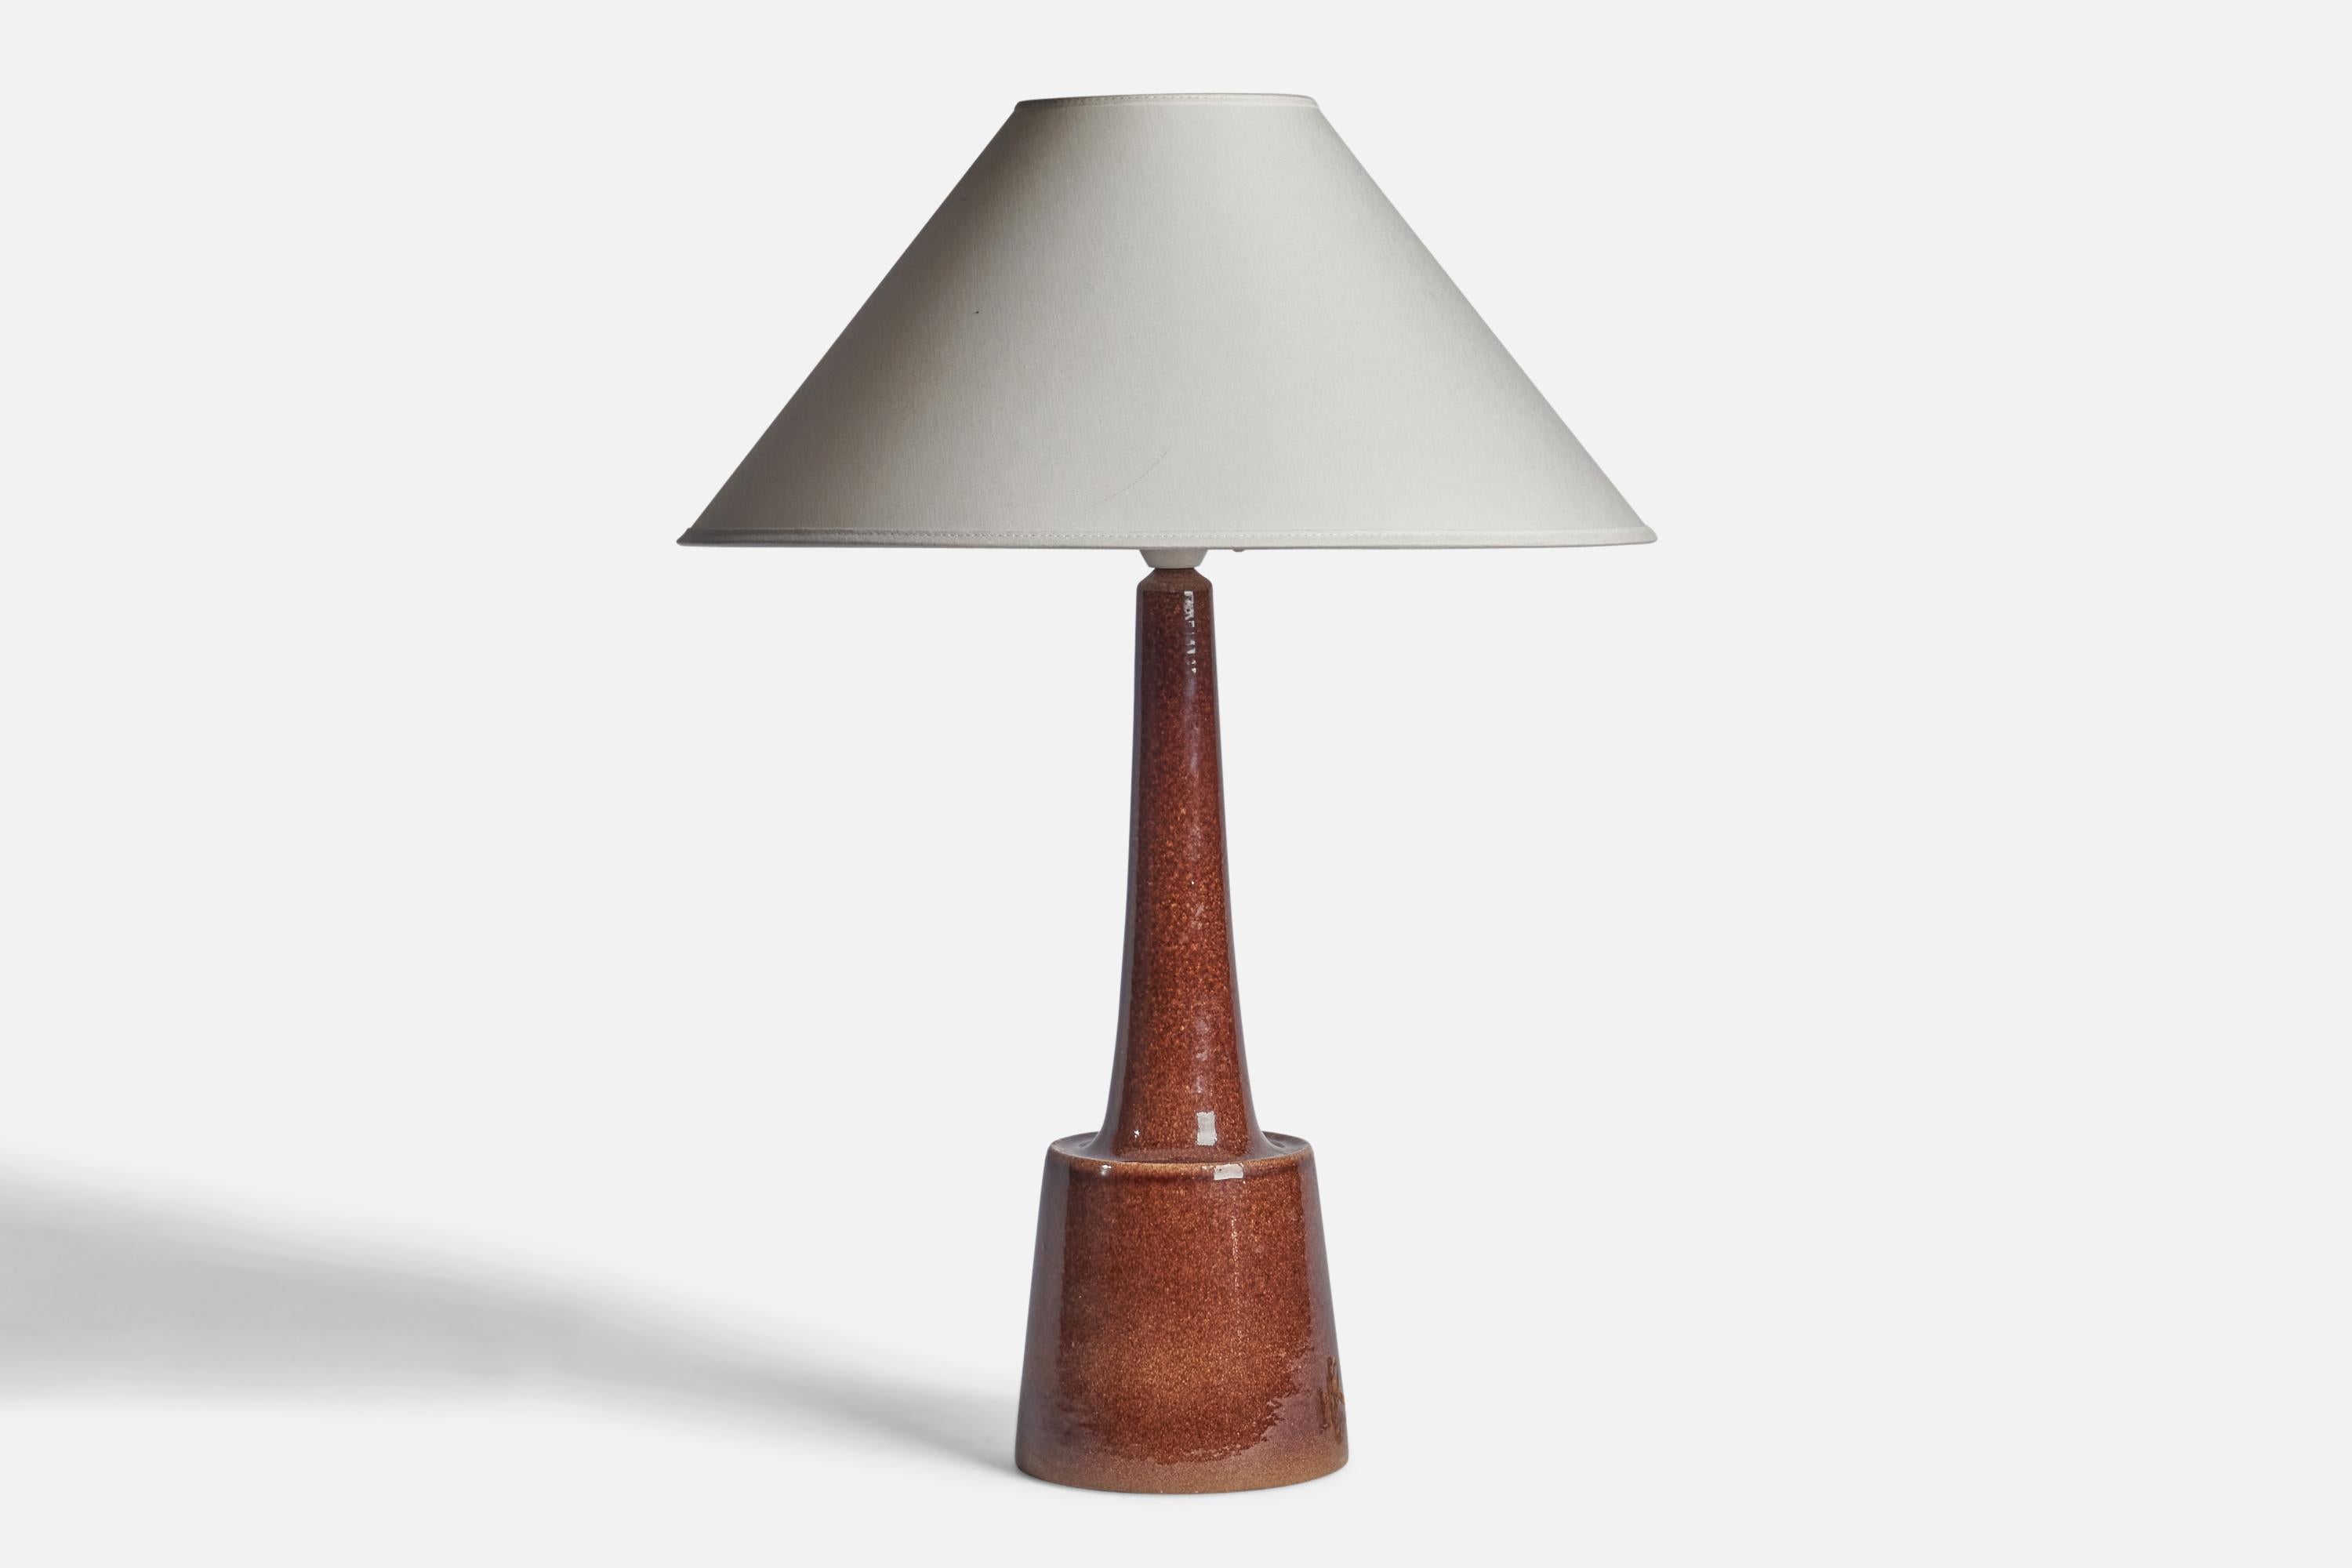 Lampe de table en grès émaillé brun, conçue par Per & Annelise Linneman-Schmidt et produite par Palshus, Danemark, années 1960

Dimensions de la lampe (pouces) : 17.65 H x 5.45